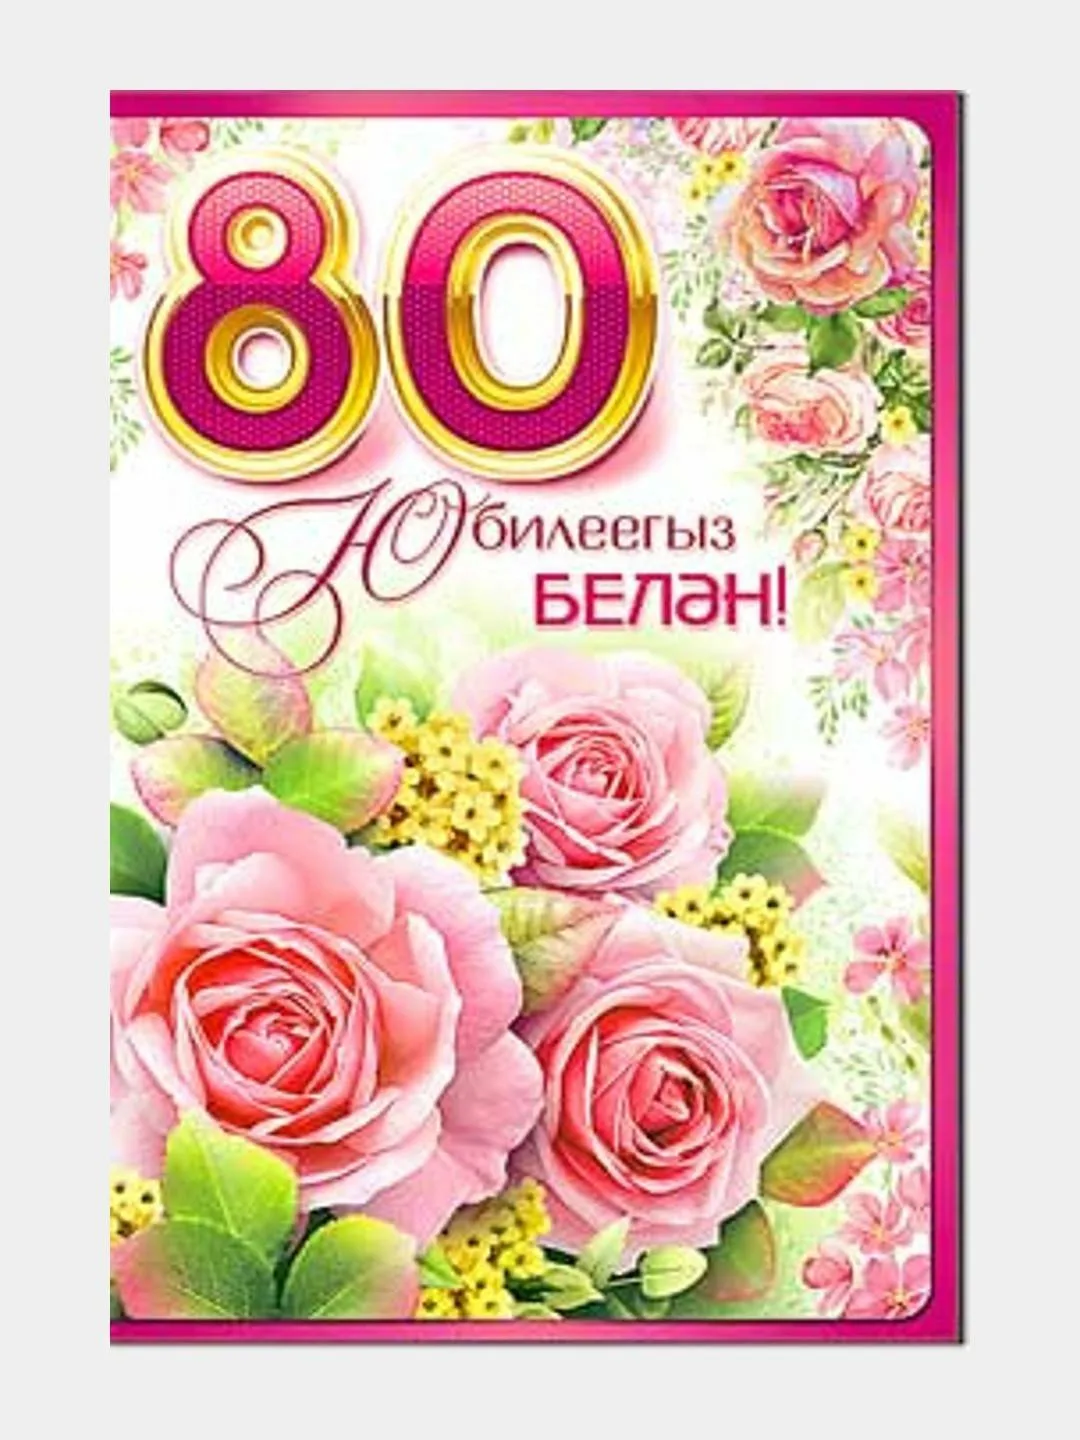 Фото Поздравления с юбилеем на татарском языке мужчине/женщине #73